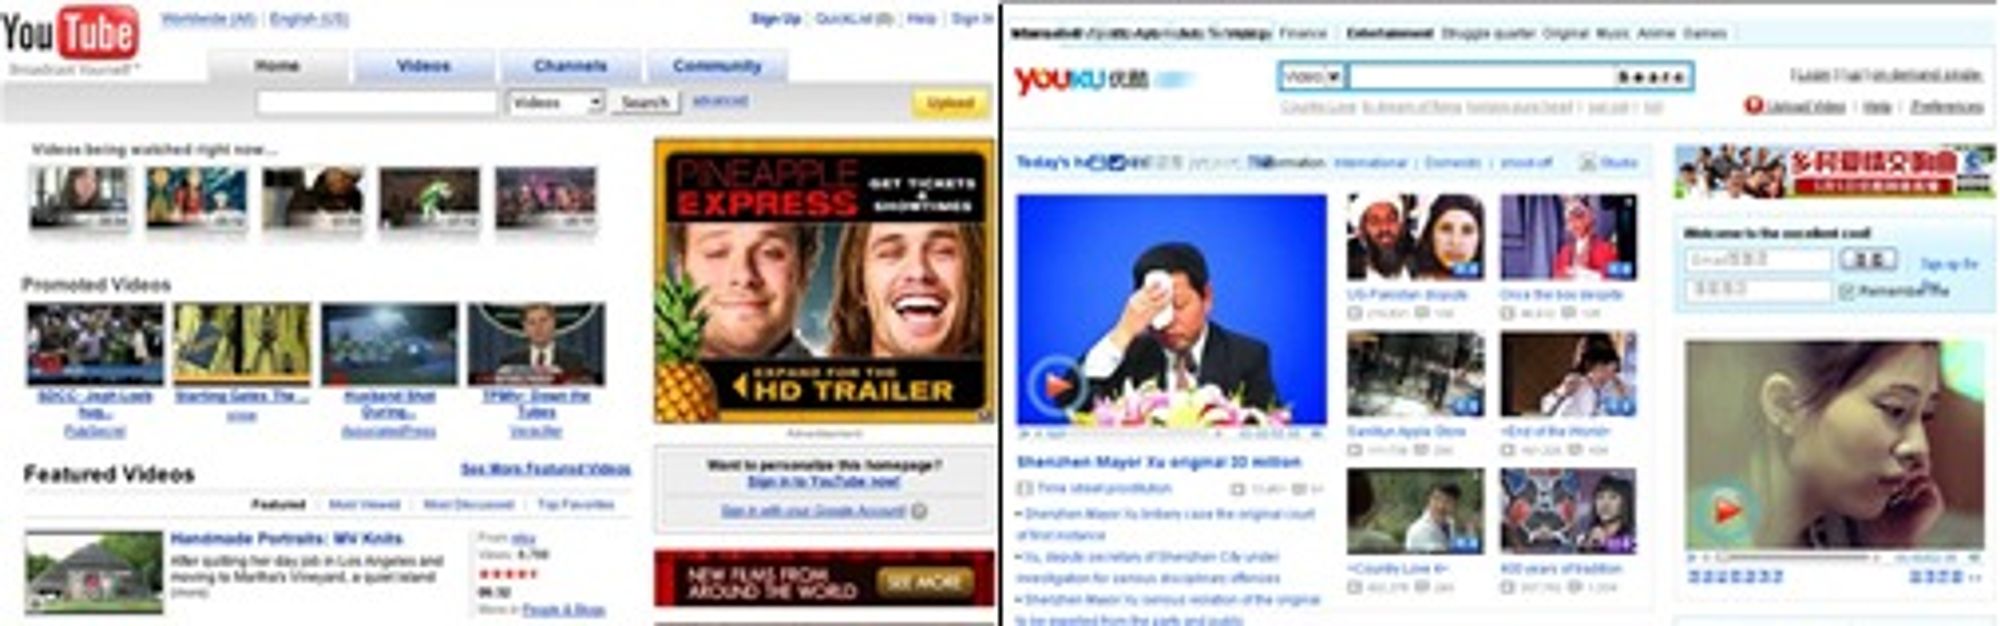 YouTube (etablert 2005) og YouKu (2006).